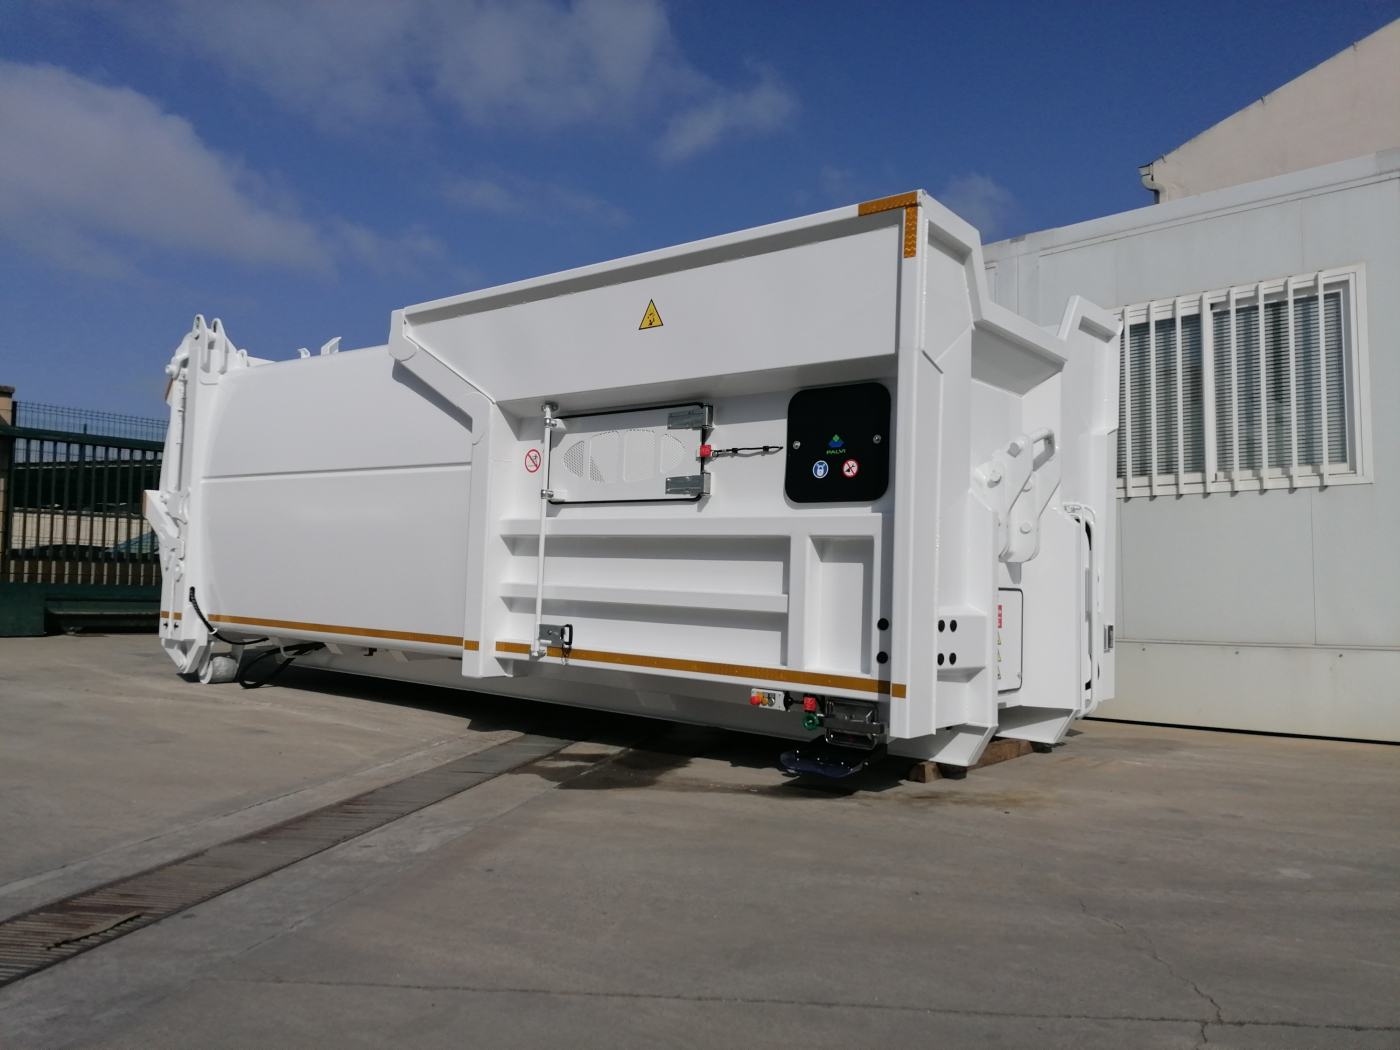 Palvi entrega tres compactadores de recogida selectiva en Castellbisbal